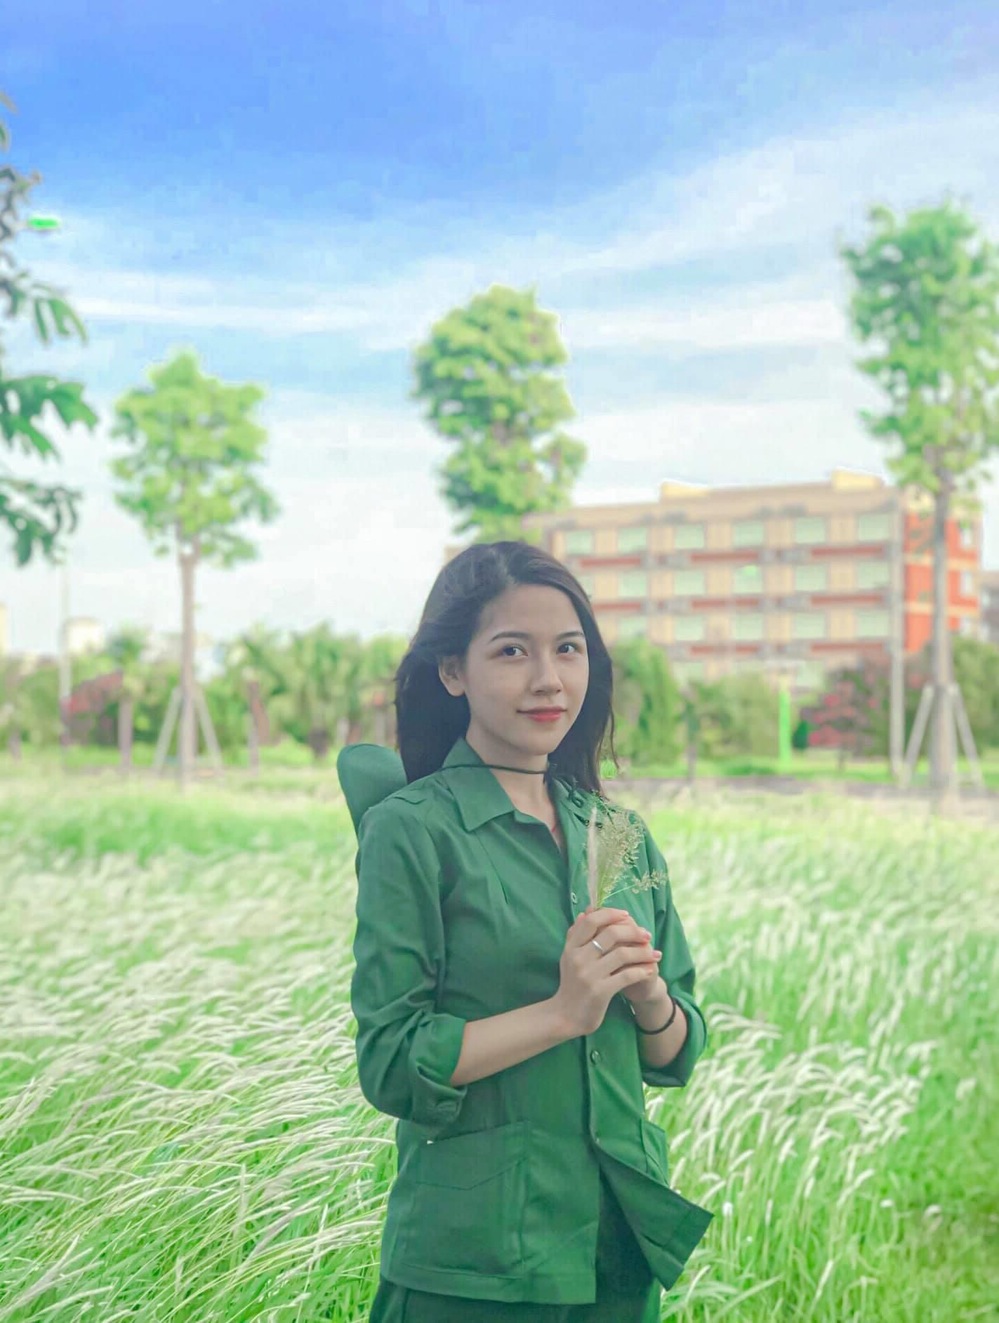  
Nguyễn Ngọc Mai - cô bạn nữ sinh trường ĐH Kinh tế Quốc dân với loạt khoảnh khắc nữ thần trong kỳ học quân sự. (Ảnh: FBNV)